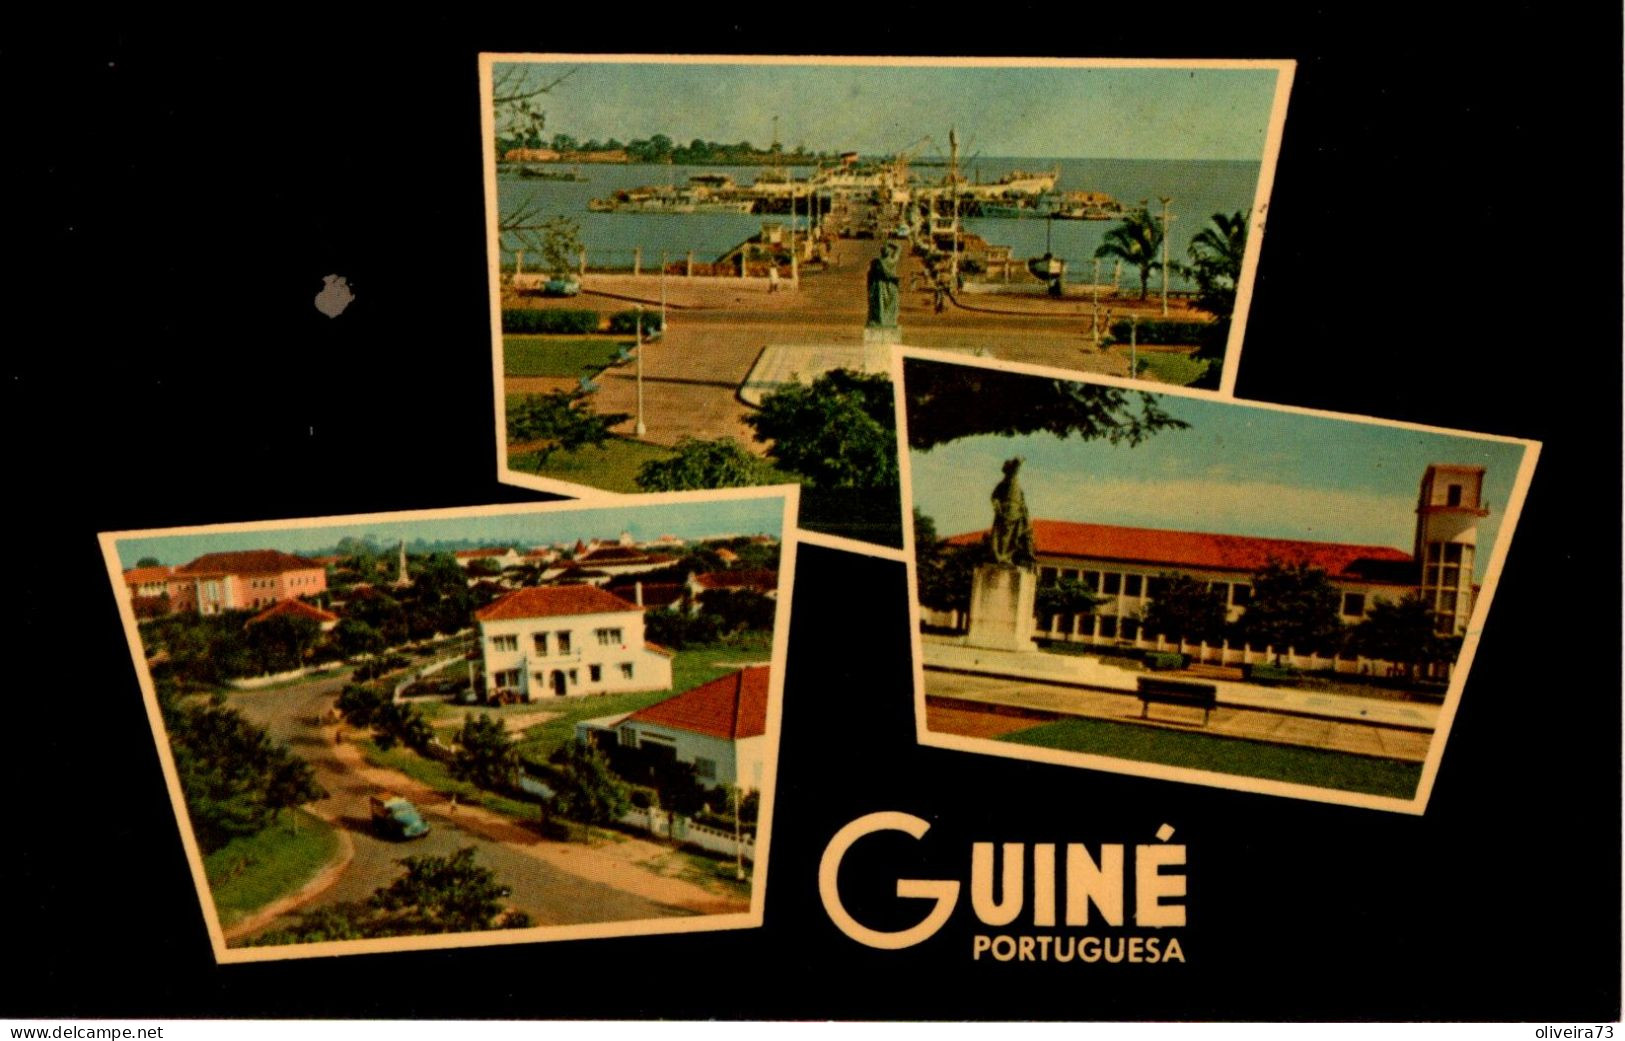 GUINÉ - PORTUGUESA - Guinea Bissau